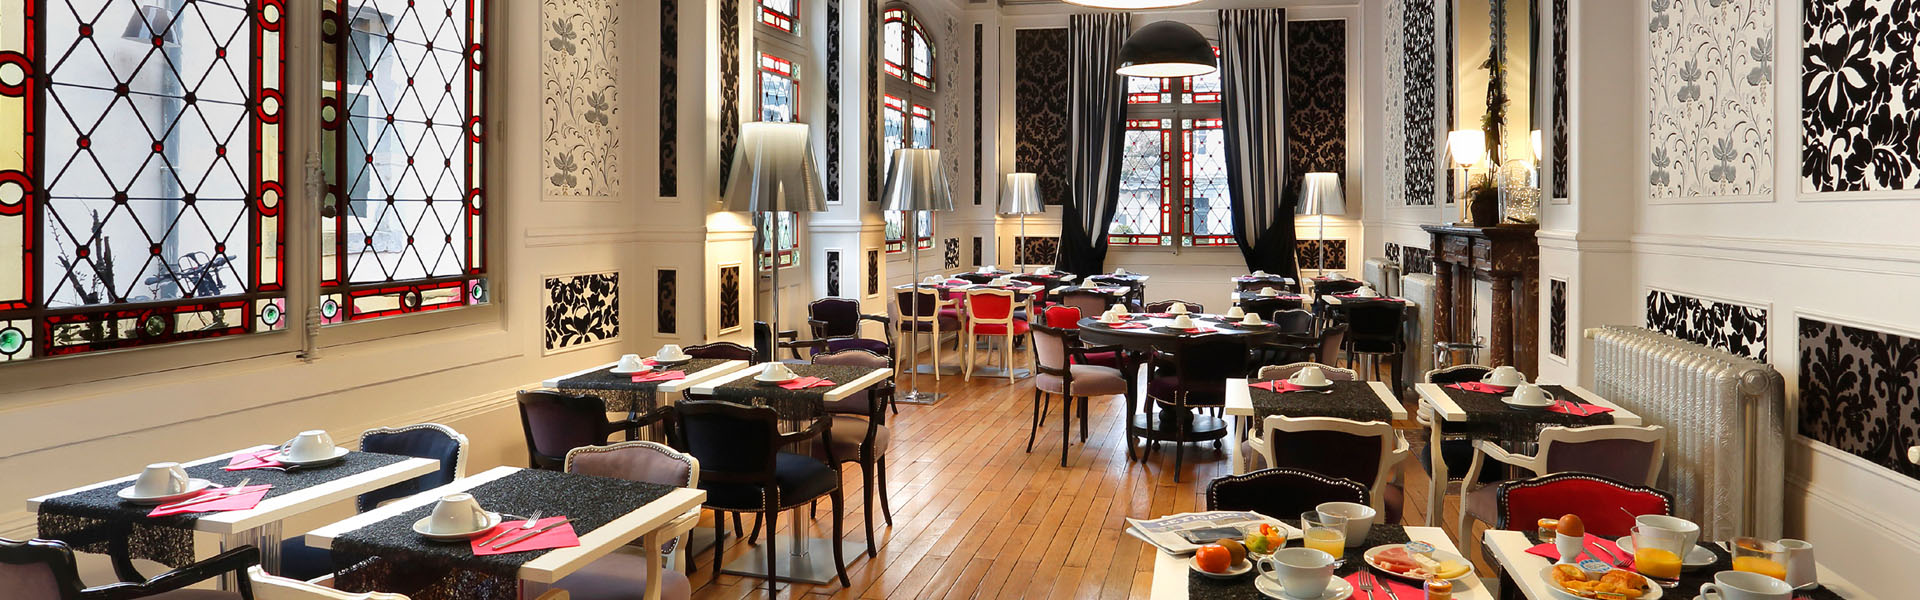 Salle des petits déjeuner de l'hôtel de Paris